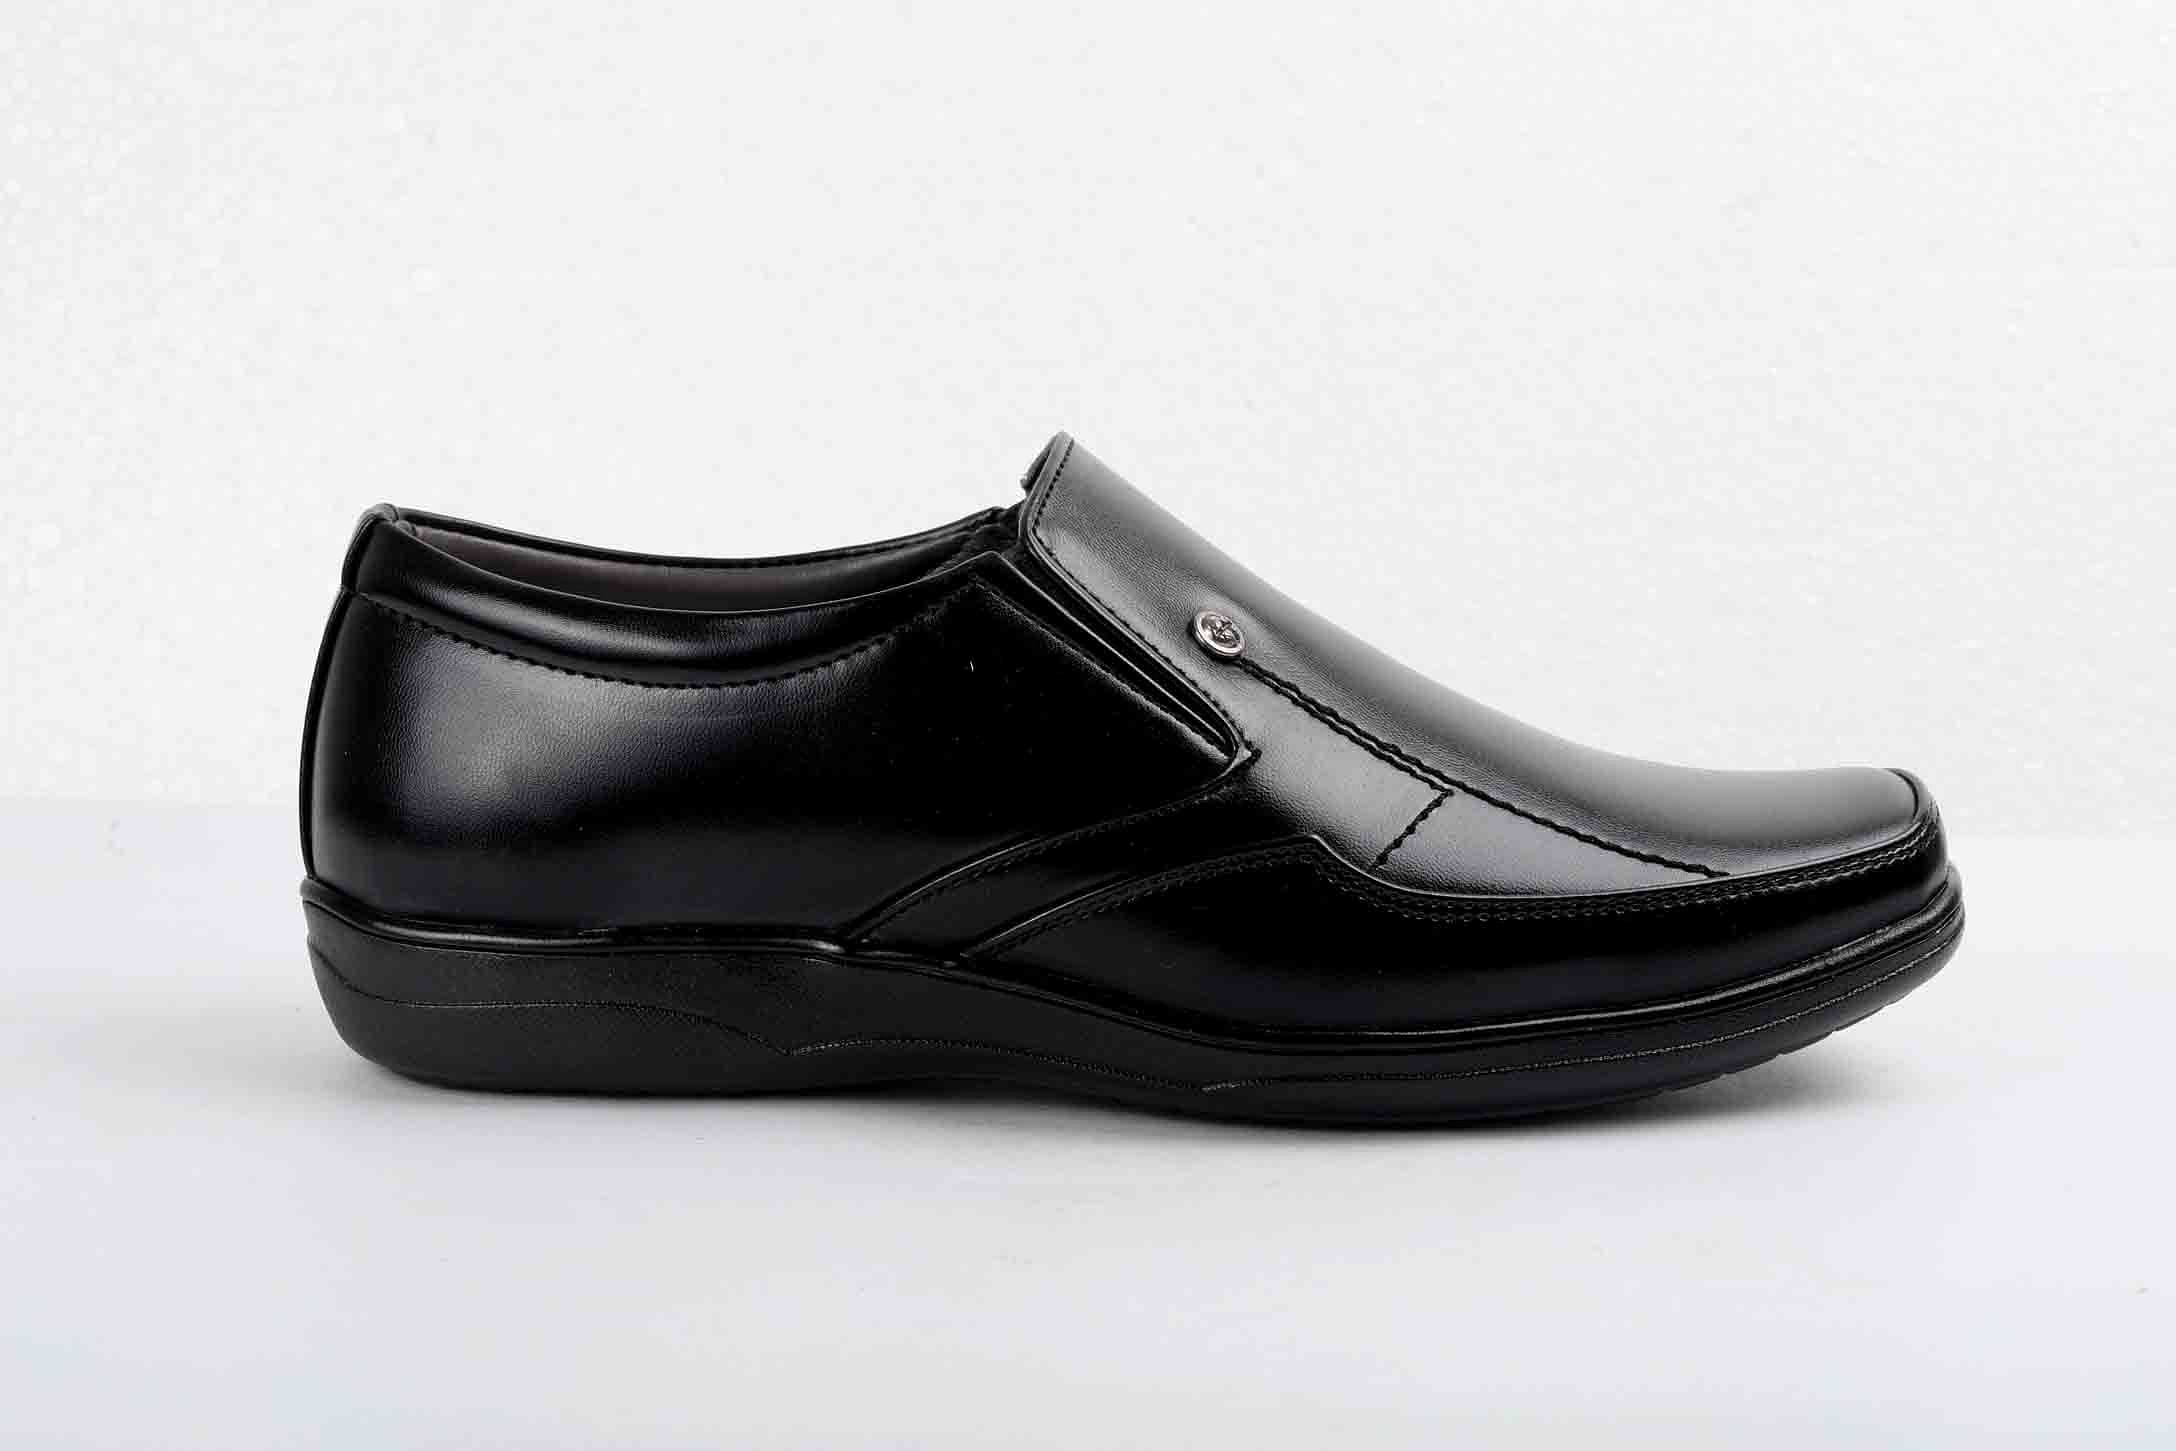 Pair-it Men moccasin Formal Shoes - Black- LZ-RYDER102